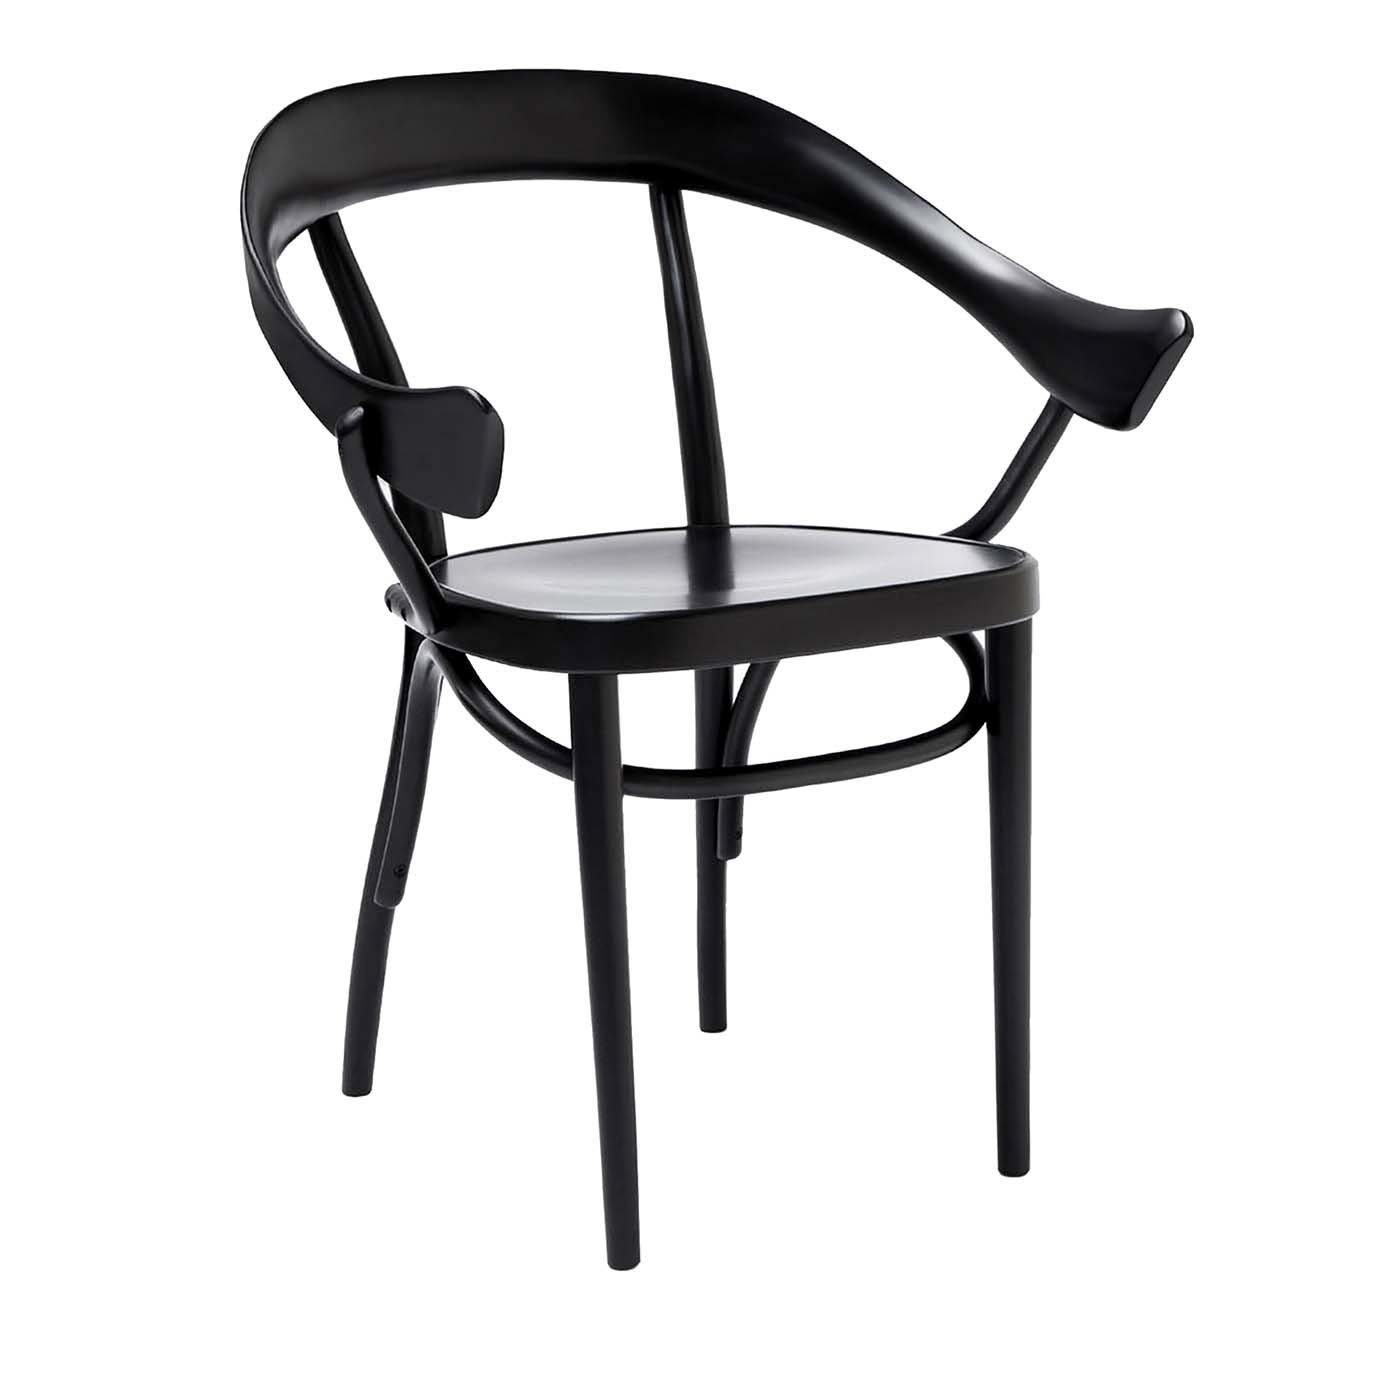 Bistrostuhl Chair by Nigel Coates - Gebrüder Thonet Vienna GmbH (GTV) – Wiener GTV Design